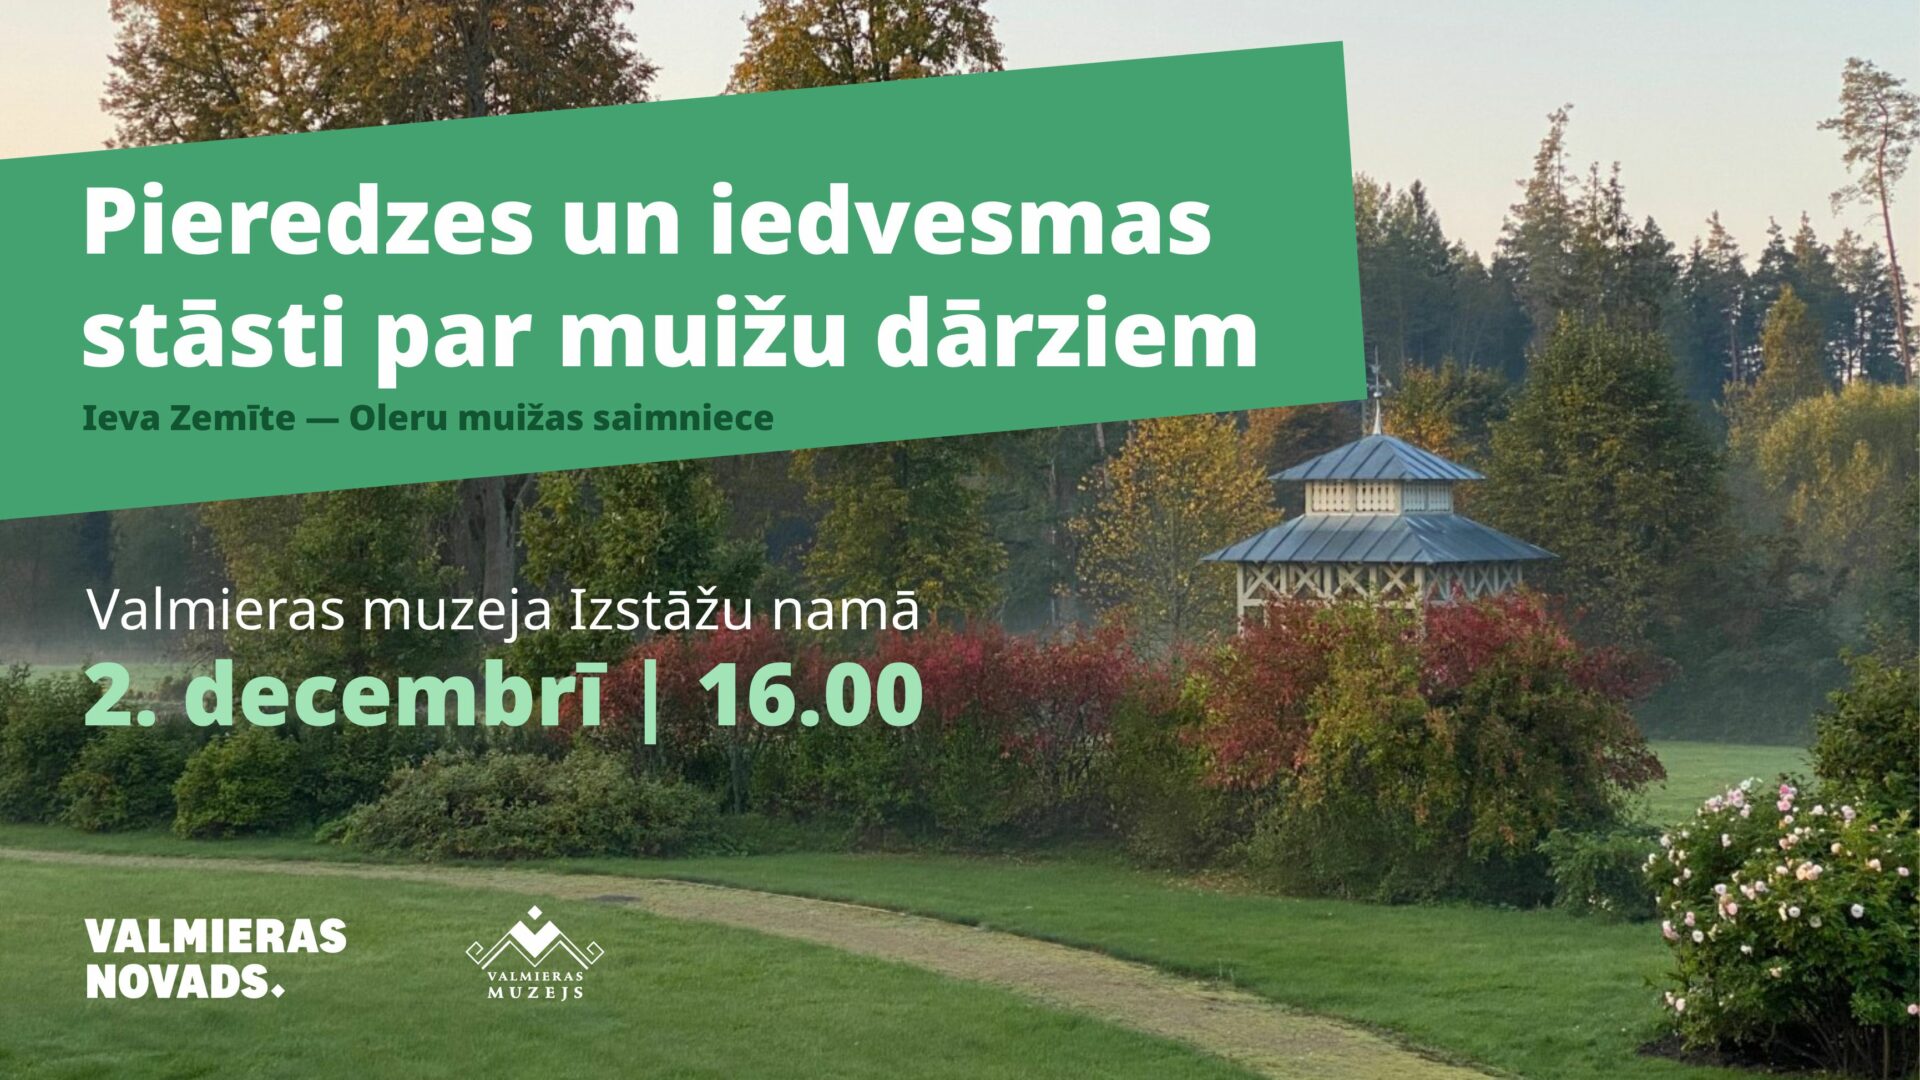 2.decembrī plkst. 16.00 Valmieras muzeja Izstāžu namā pieredzes un iedvesmas stāstos par muižu dārziem dalīsies Ieva Zemīte, Oleru muižas saimniece.